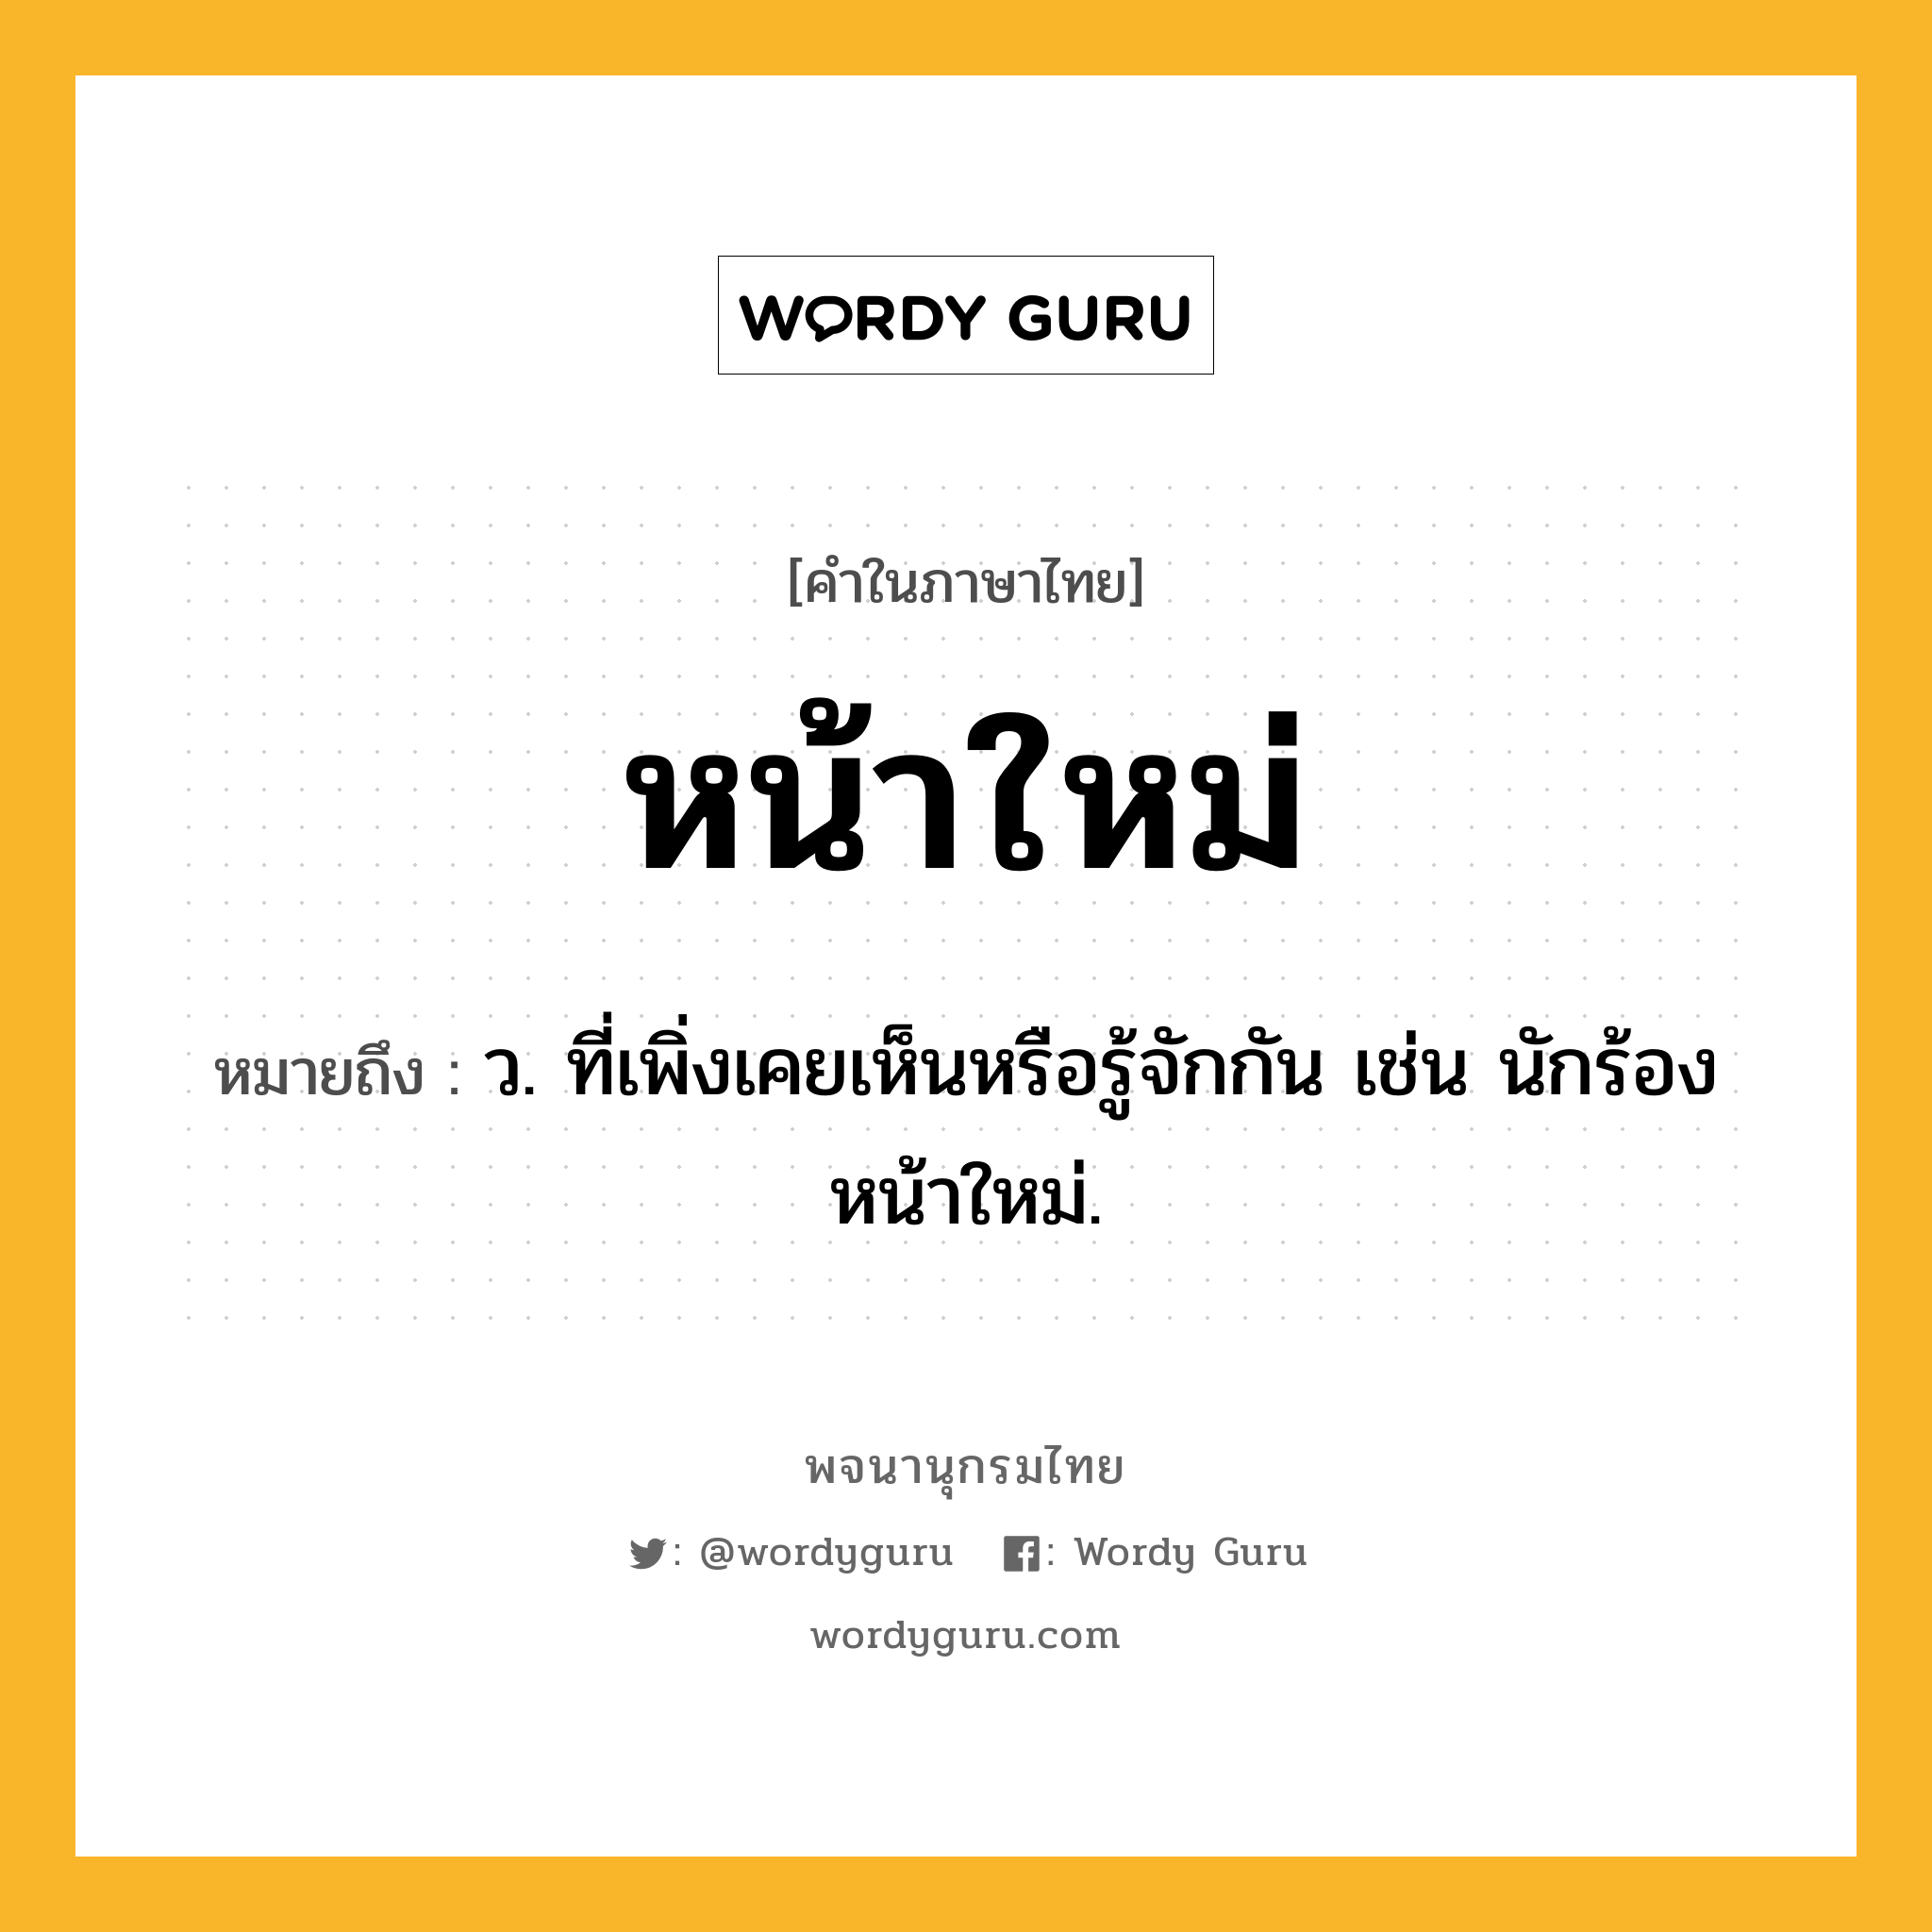 หน้าใหม่ หมายถึงอะไร?, คำในภาษาไทย หน้าใหม่ หมายถึง ว. ที่เพิ่งเคยเห็นหรือรู้จักกัน เช่น นักร้องหน้าใหม่.